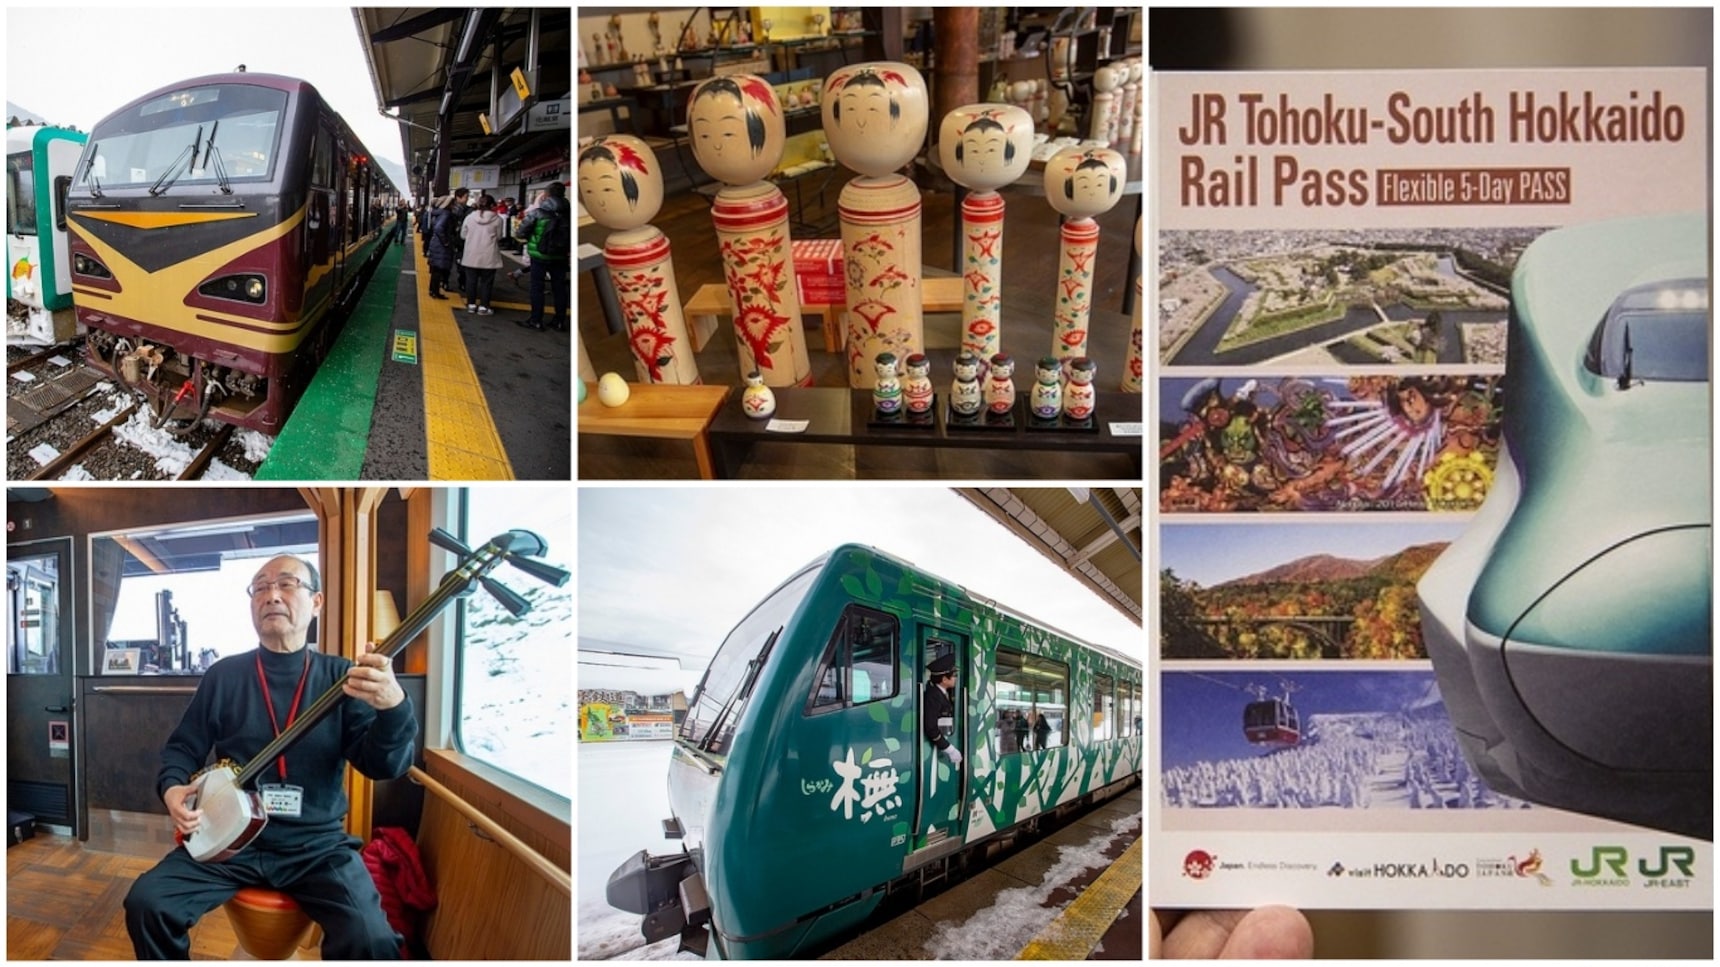 【日本旅遊票券】造訪日本東北和函館必持的「JR東北・南北海道鐵道周遊券」